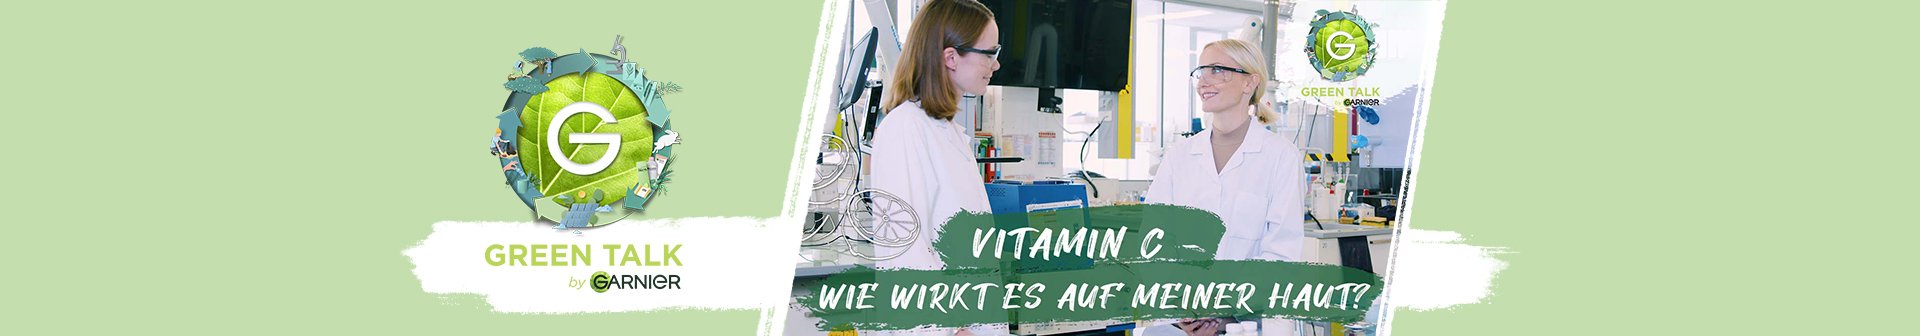 Garnier Green Talk #11 - Vitamin C - Wie wirkt es auf meiner Haut?